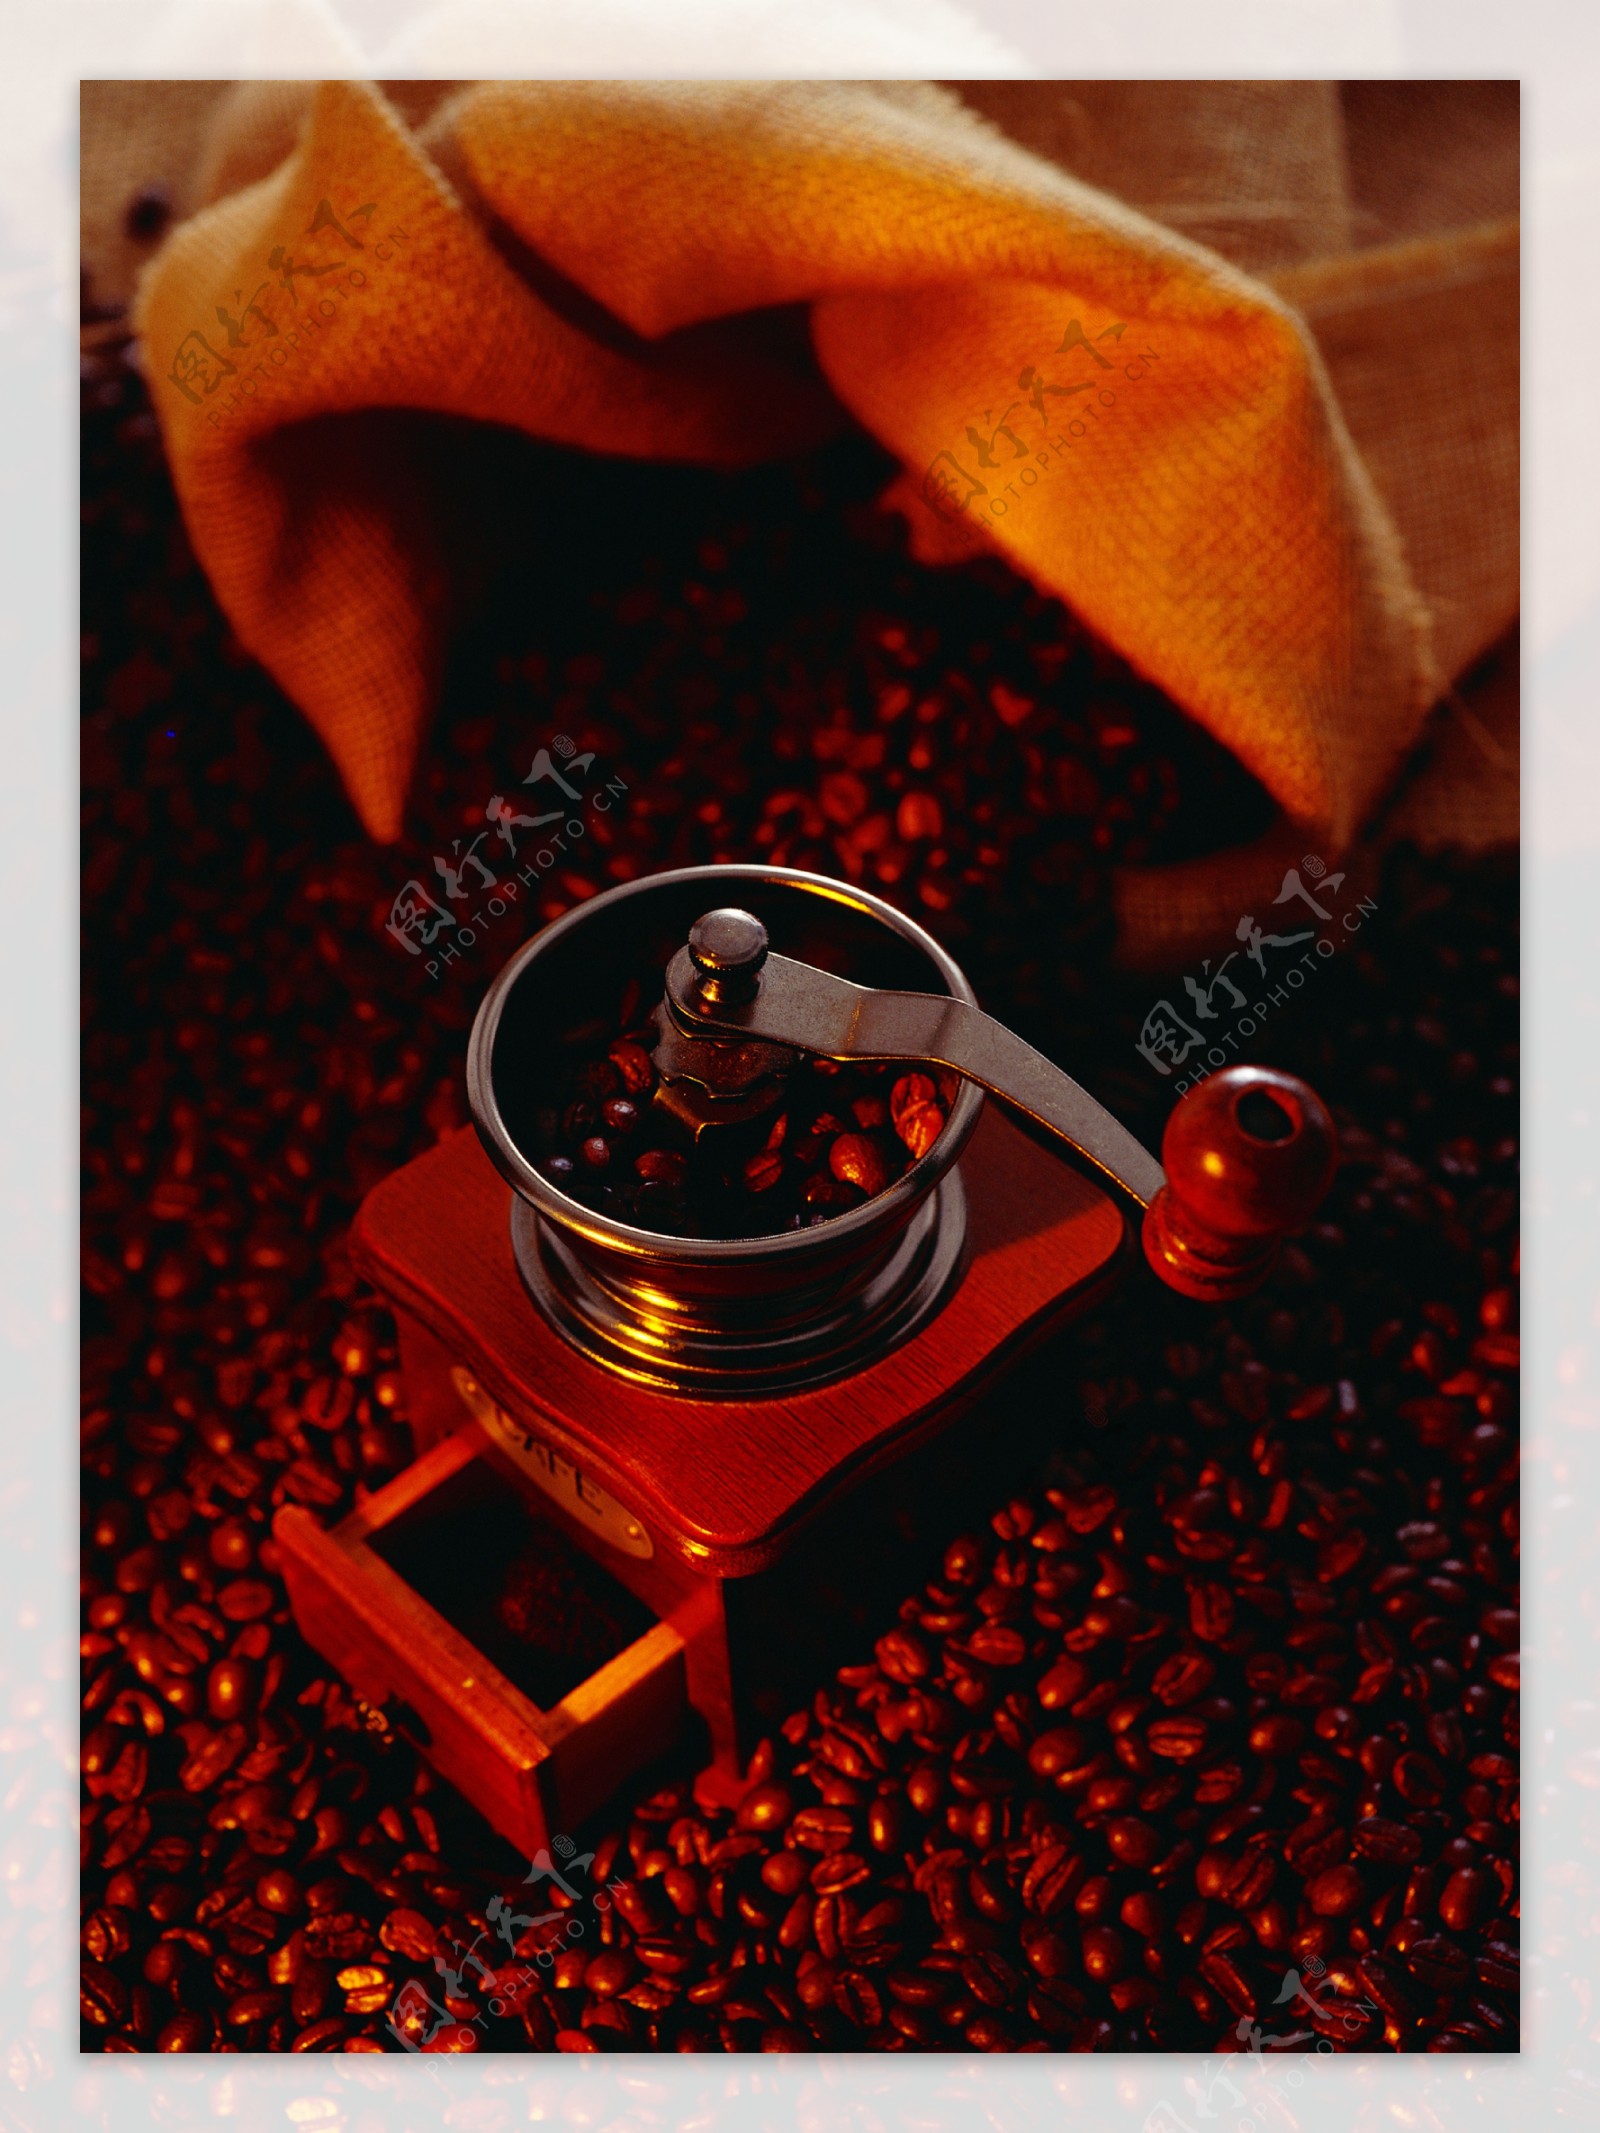 咖啡豆粉碎机图片